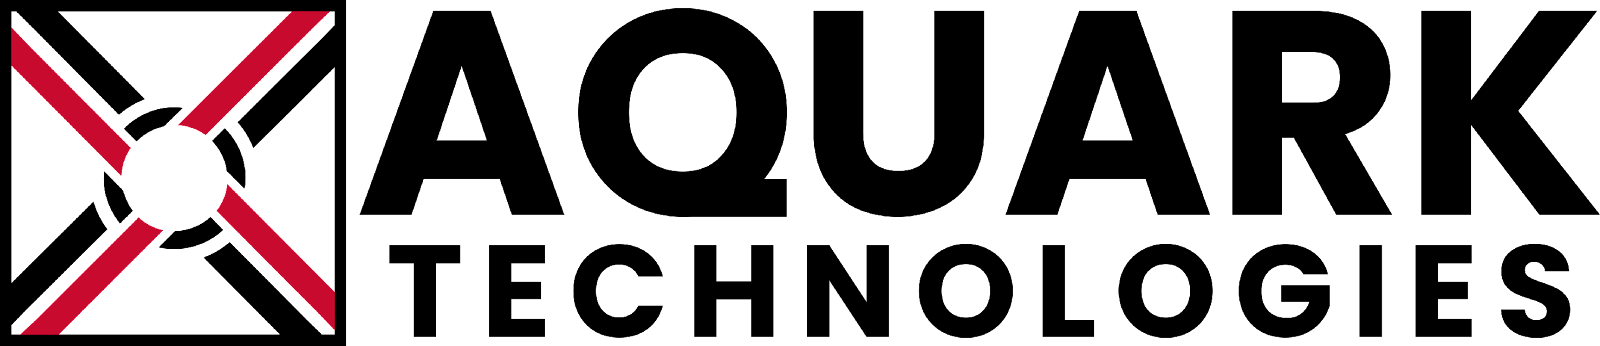 En svart bakgrunn med en svart firkant Beskrivelse genereres automatisk med middels selvtillit